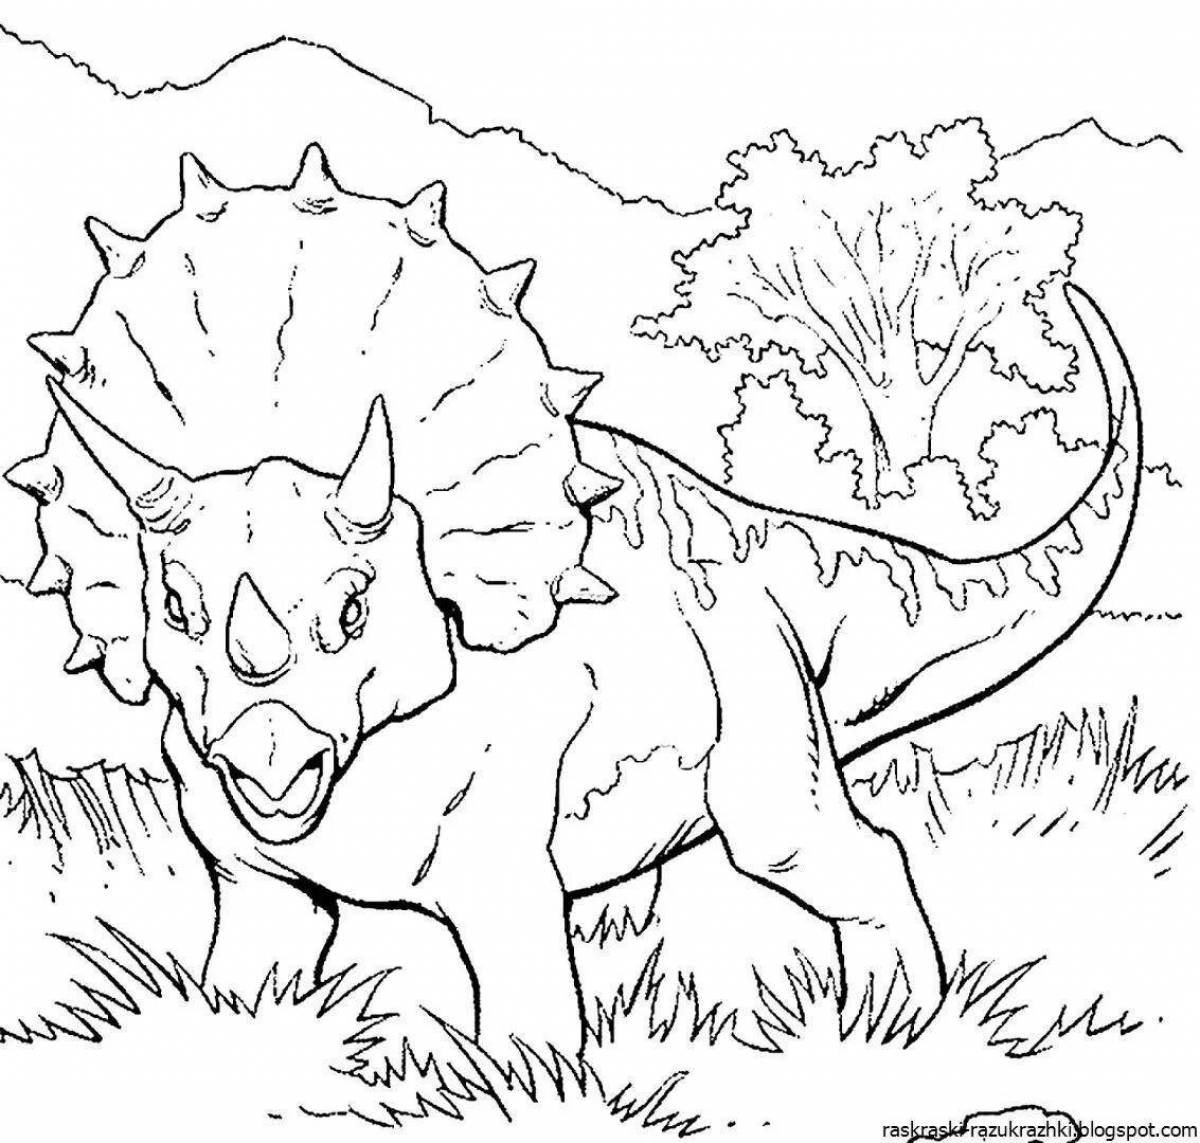 Анимированные раскраски динозавров для детей 7 лет